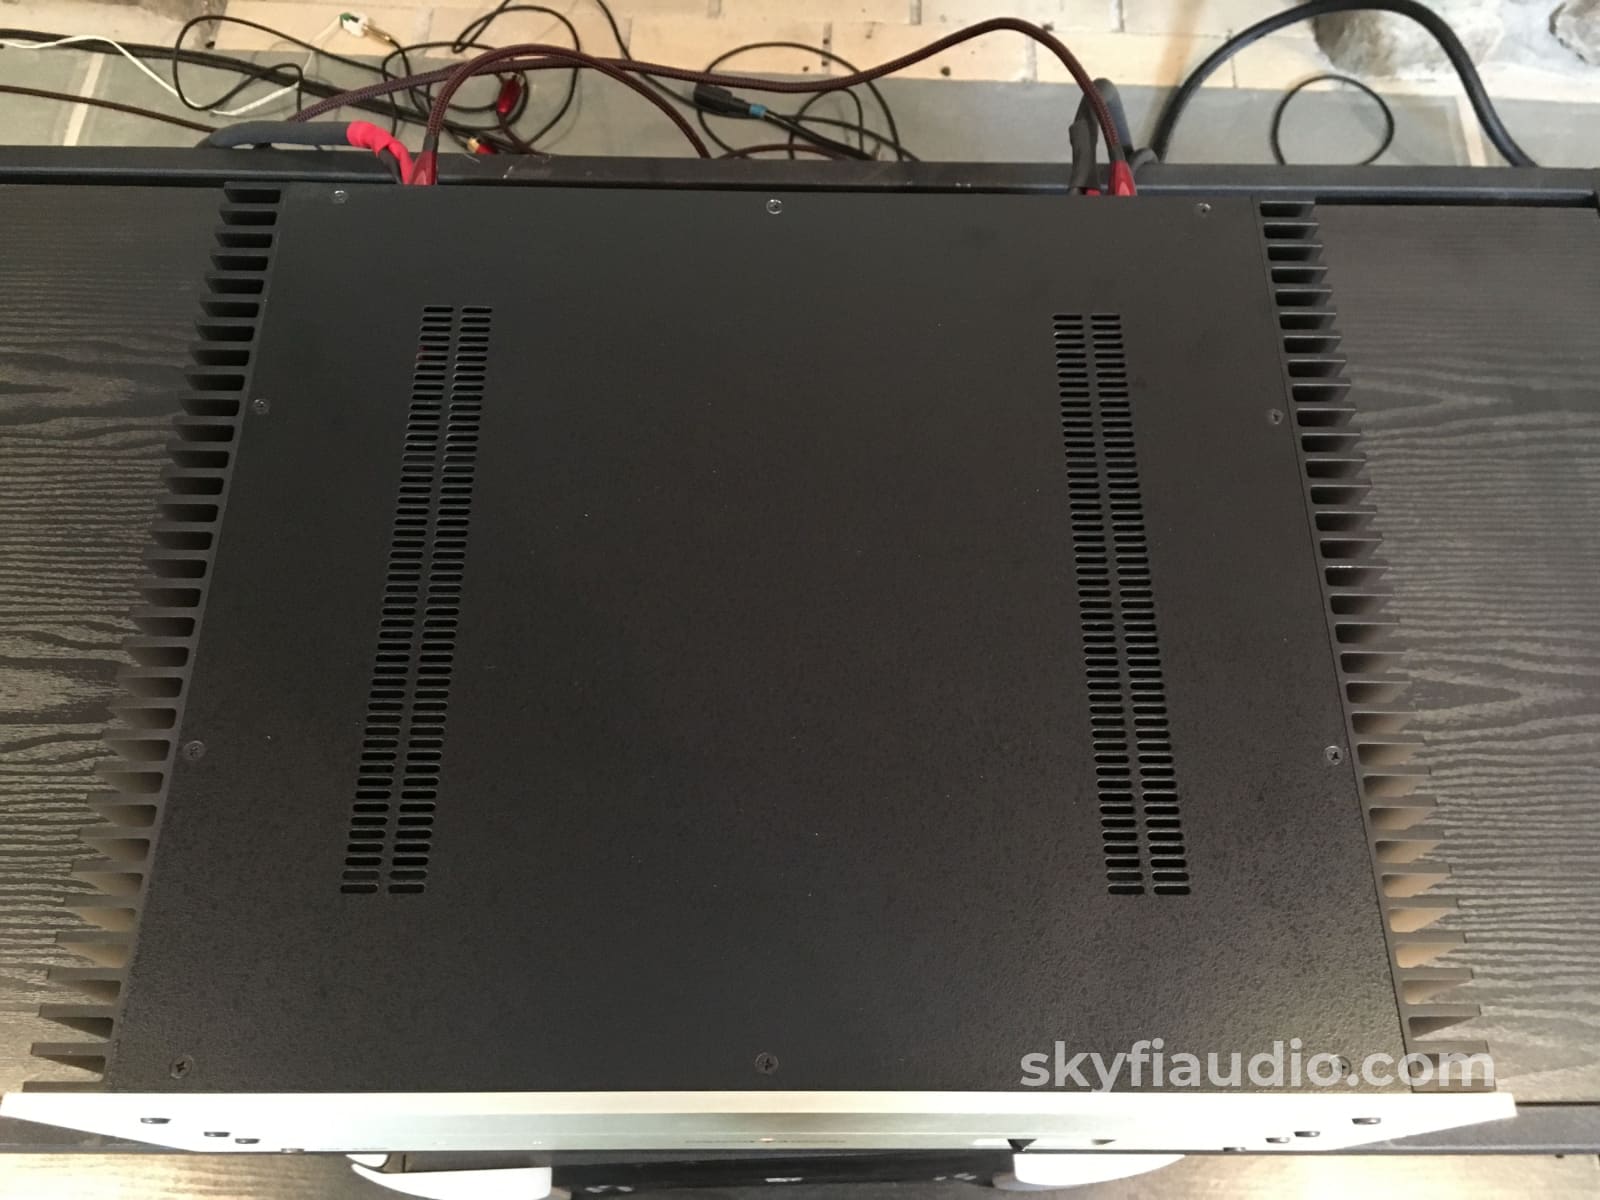 Conrad-Johnson Mf2300 Solid State Amplifier